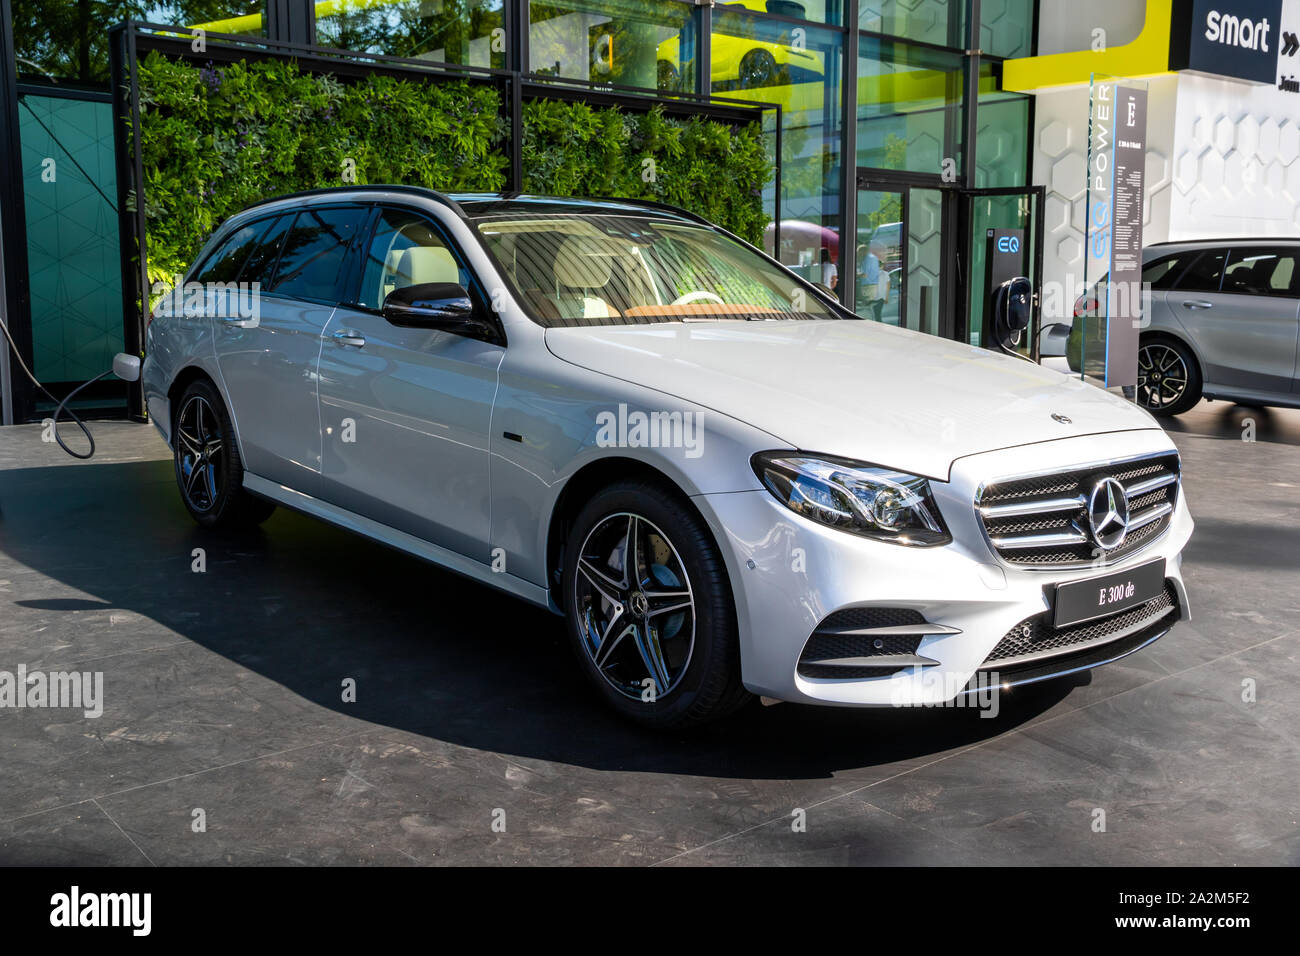 Mercedes lance sa nouvelle marque EQ